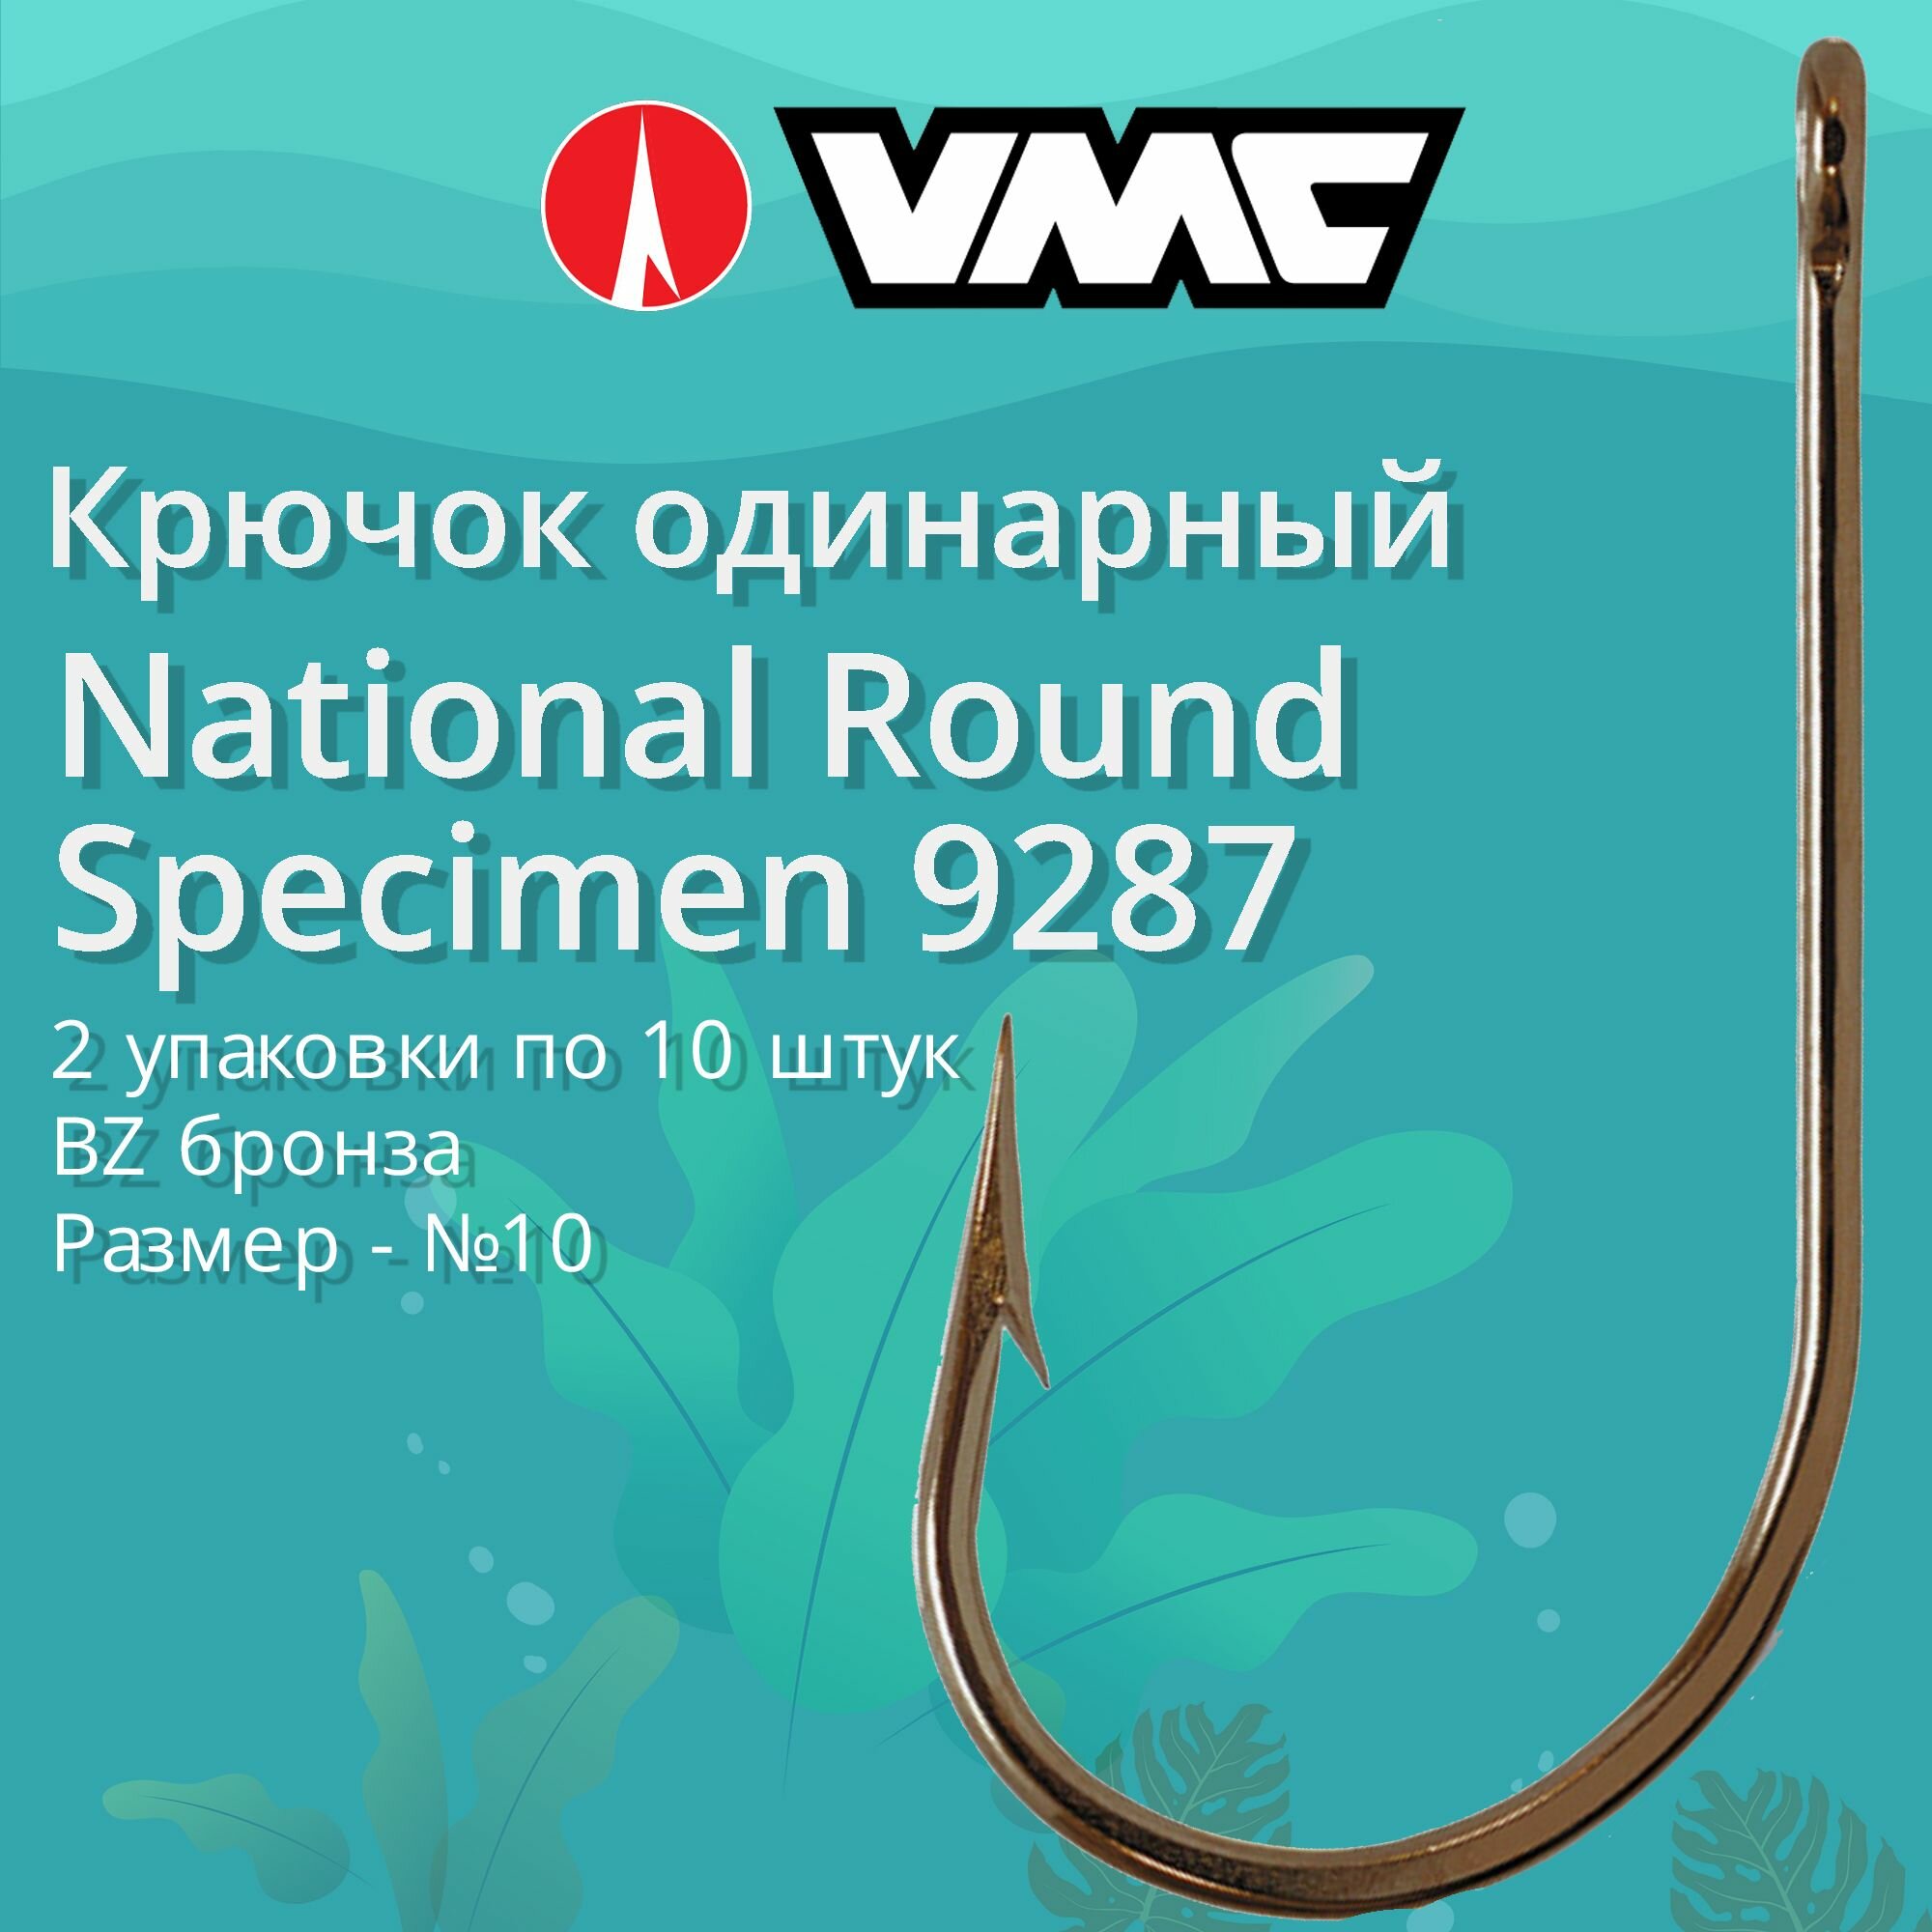 Крючки для рыбалки (одинарный) VMC National Round Specimen 9287 BZ (бронза) №10 2 упаковки по 10 штук